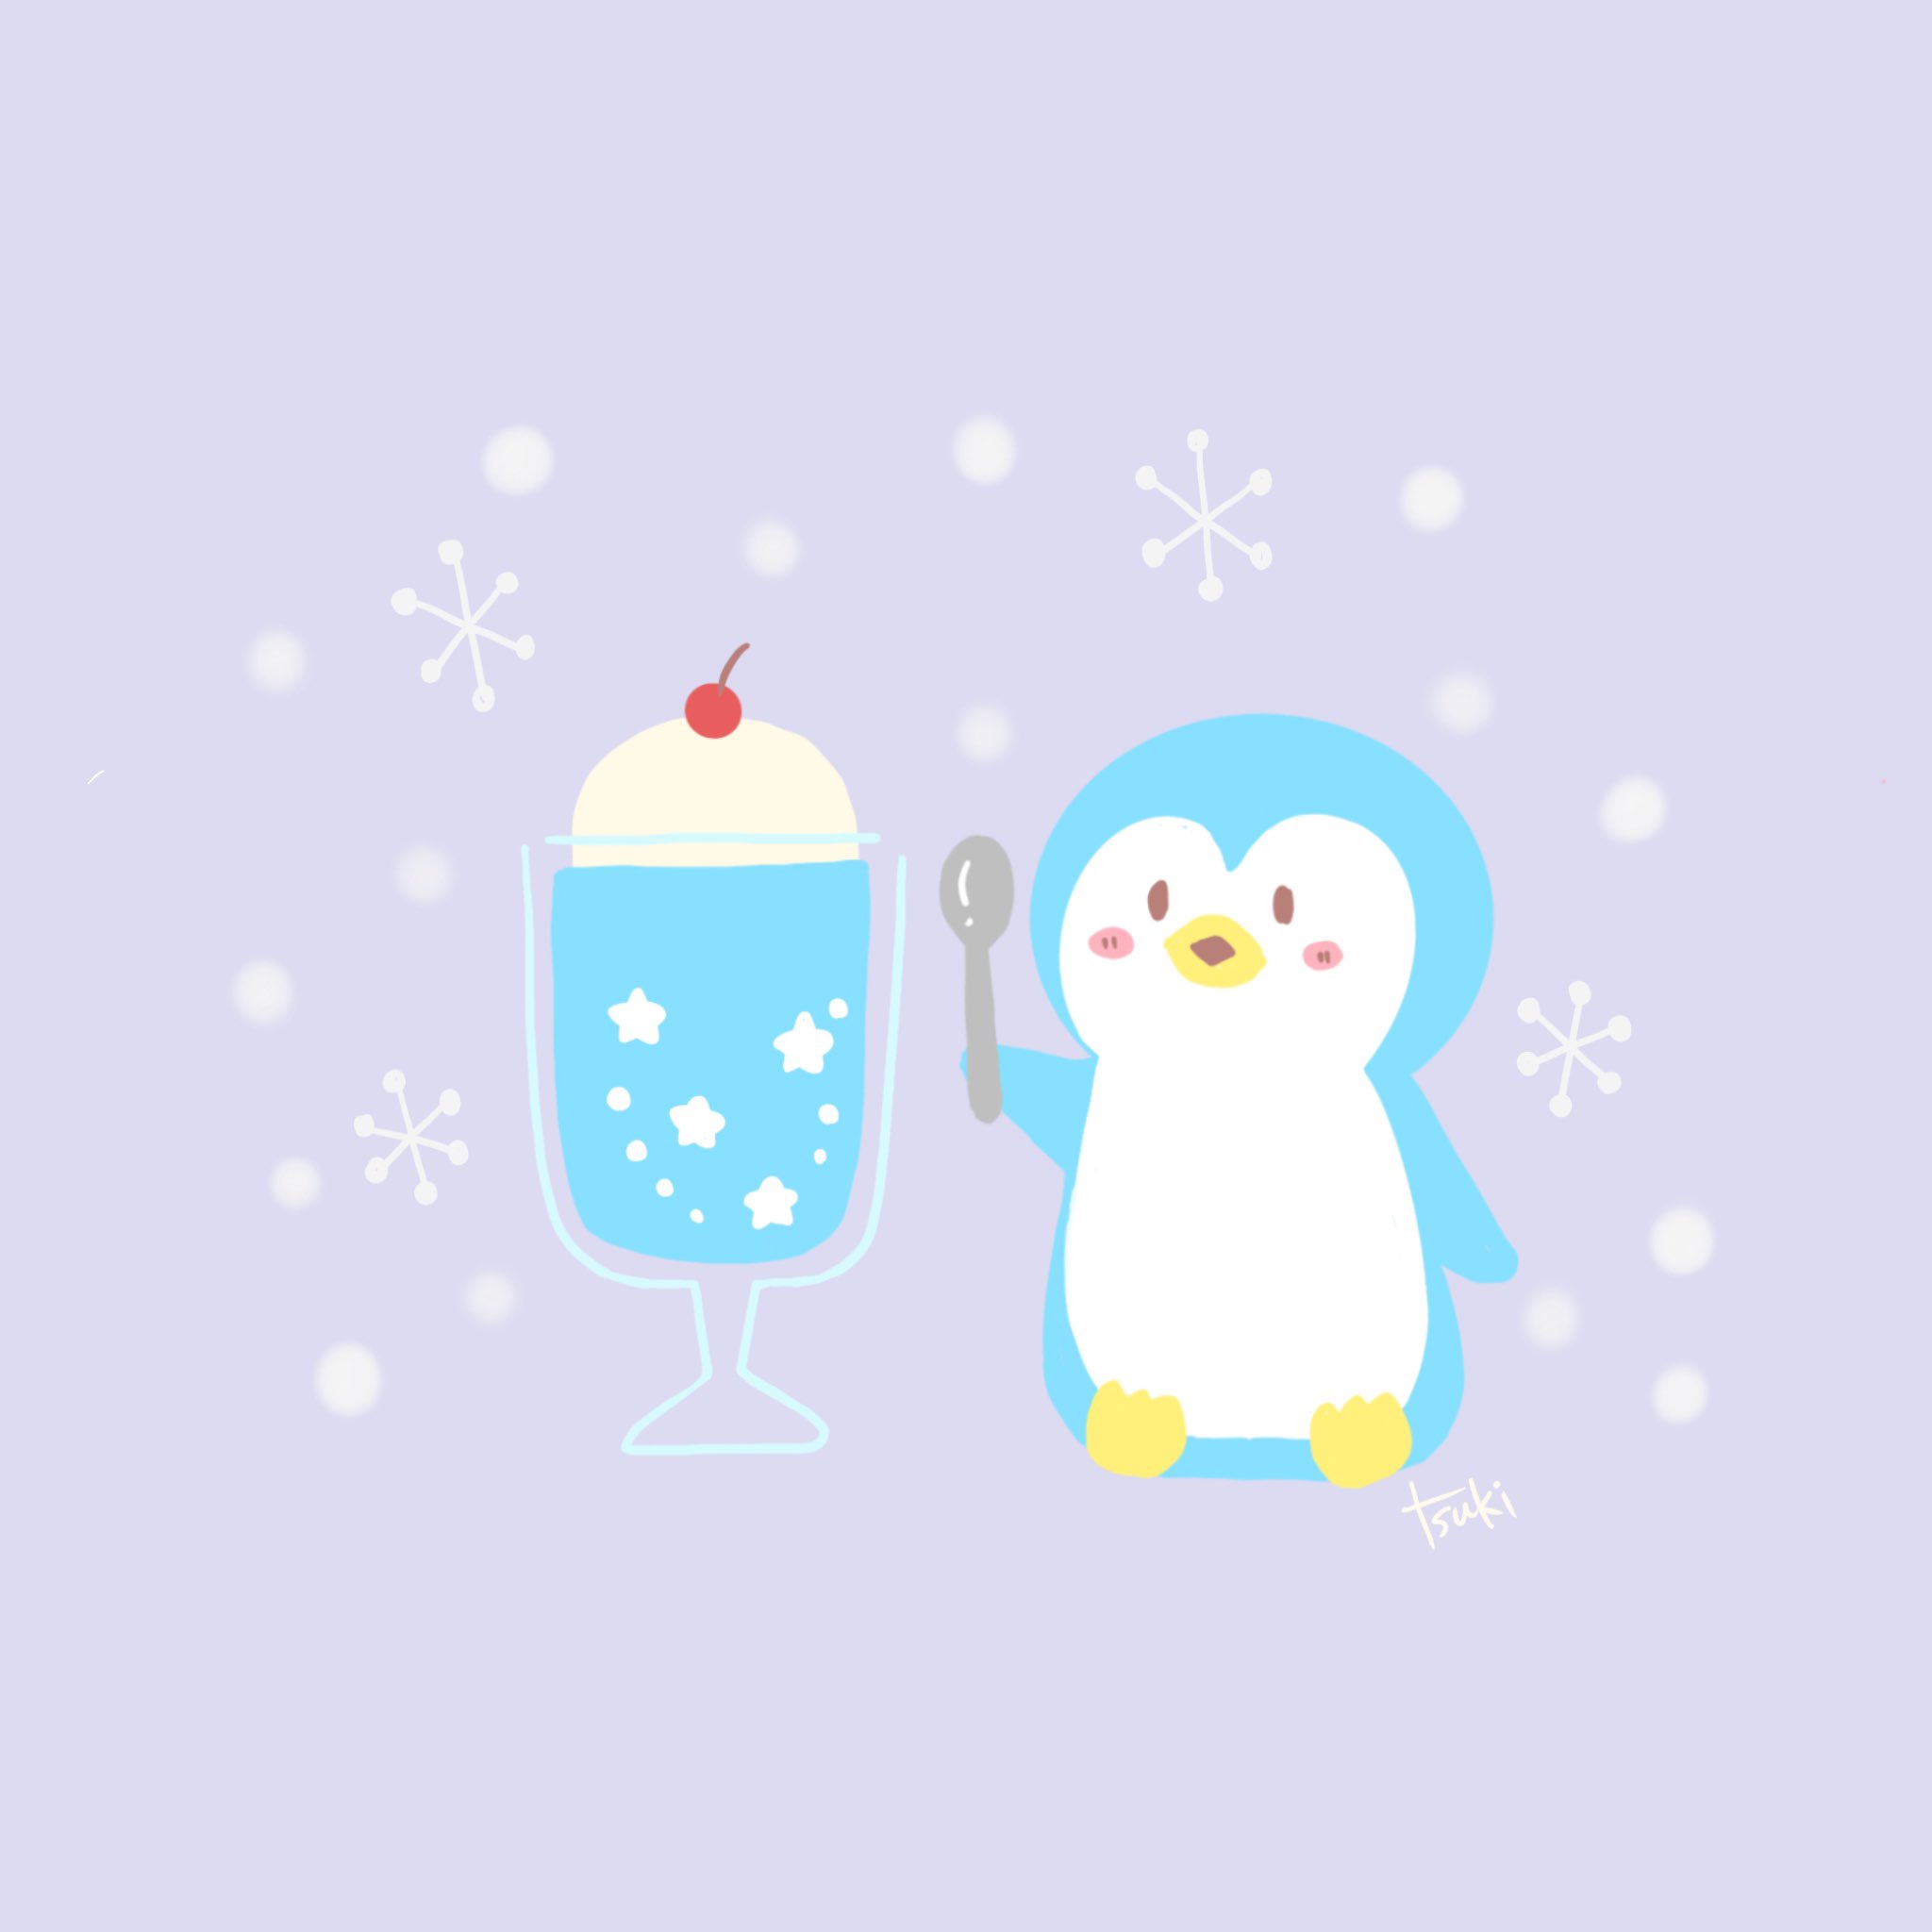 Tsuki 在 Twitter 上 寒いときに食べるアイスは なかなか美味しいのだ イラスト イラスト好きな人と繋がりたい ゆるい絵 ゆるいイラスト ゆるかわ 癒し お絵描き フォローミー Illust クリームソーダ ペンギンイラスト T Co Wkpdpbekr7 Twitter